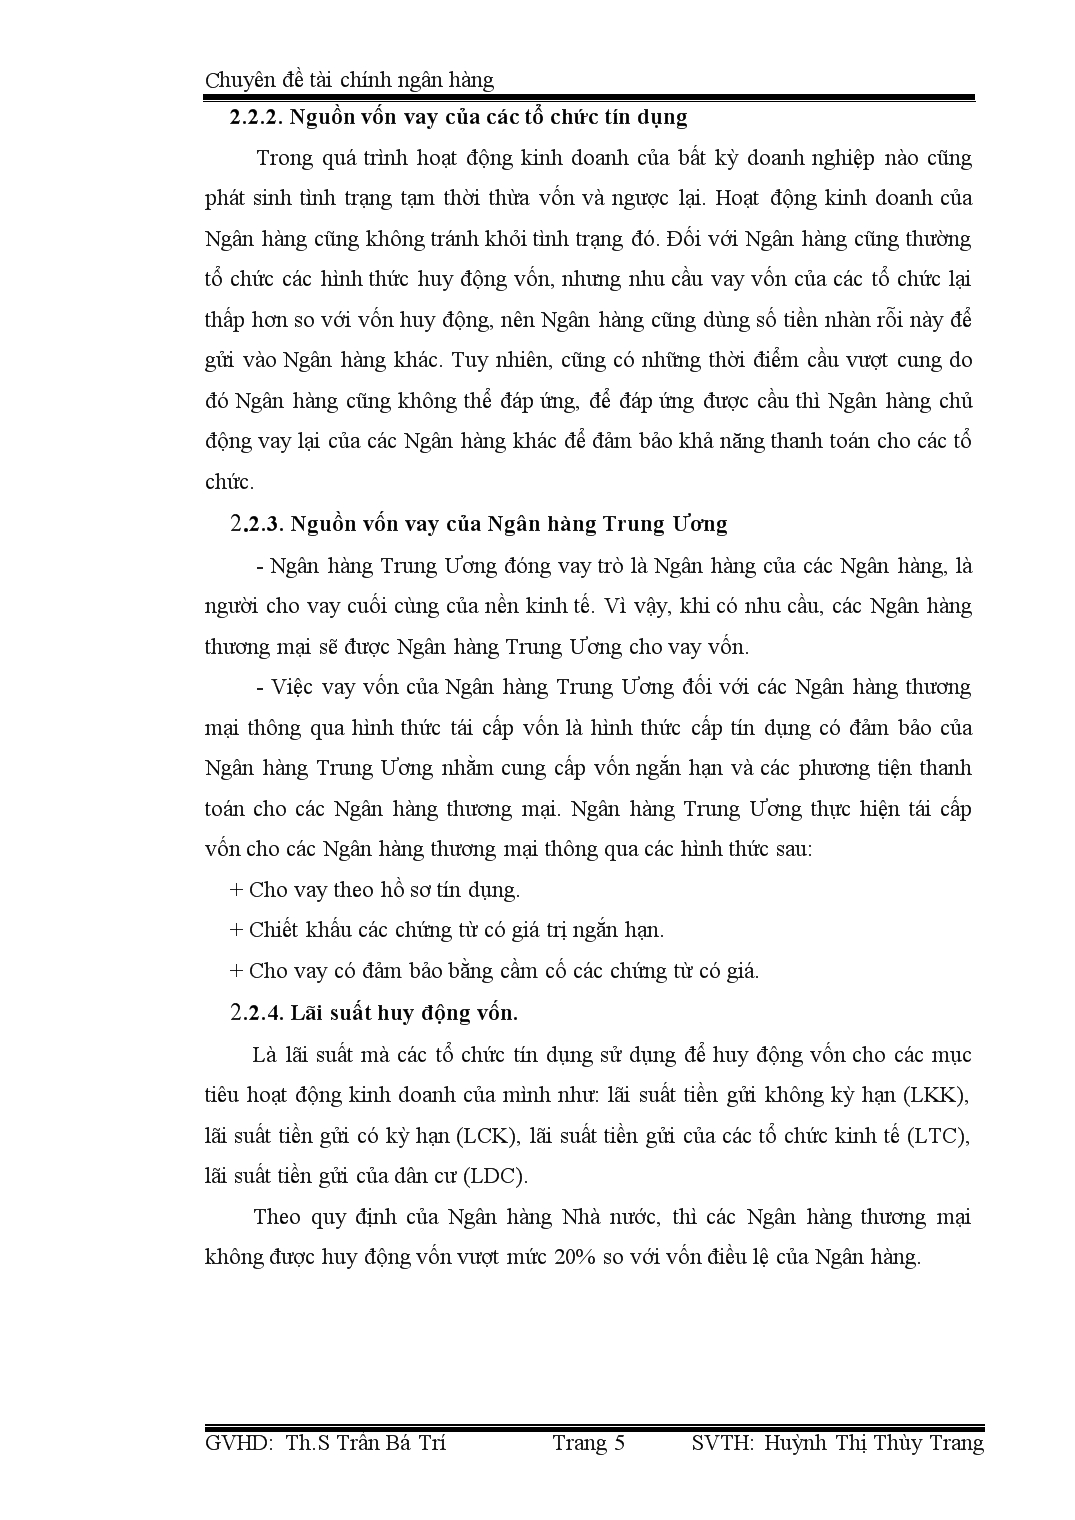 Chuyên đề Tìm hiểu tình hình huy động nguồn vốn của các ngân hàng Việt Nam hiện nay trang 5